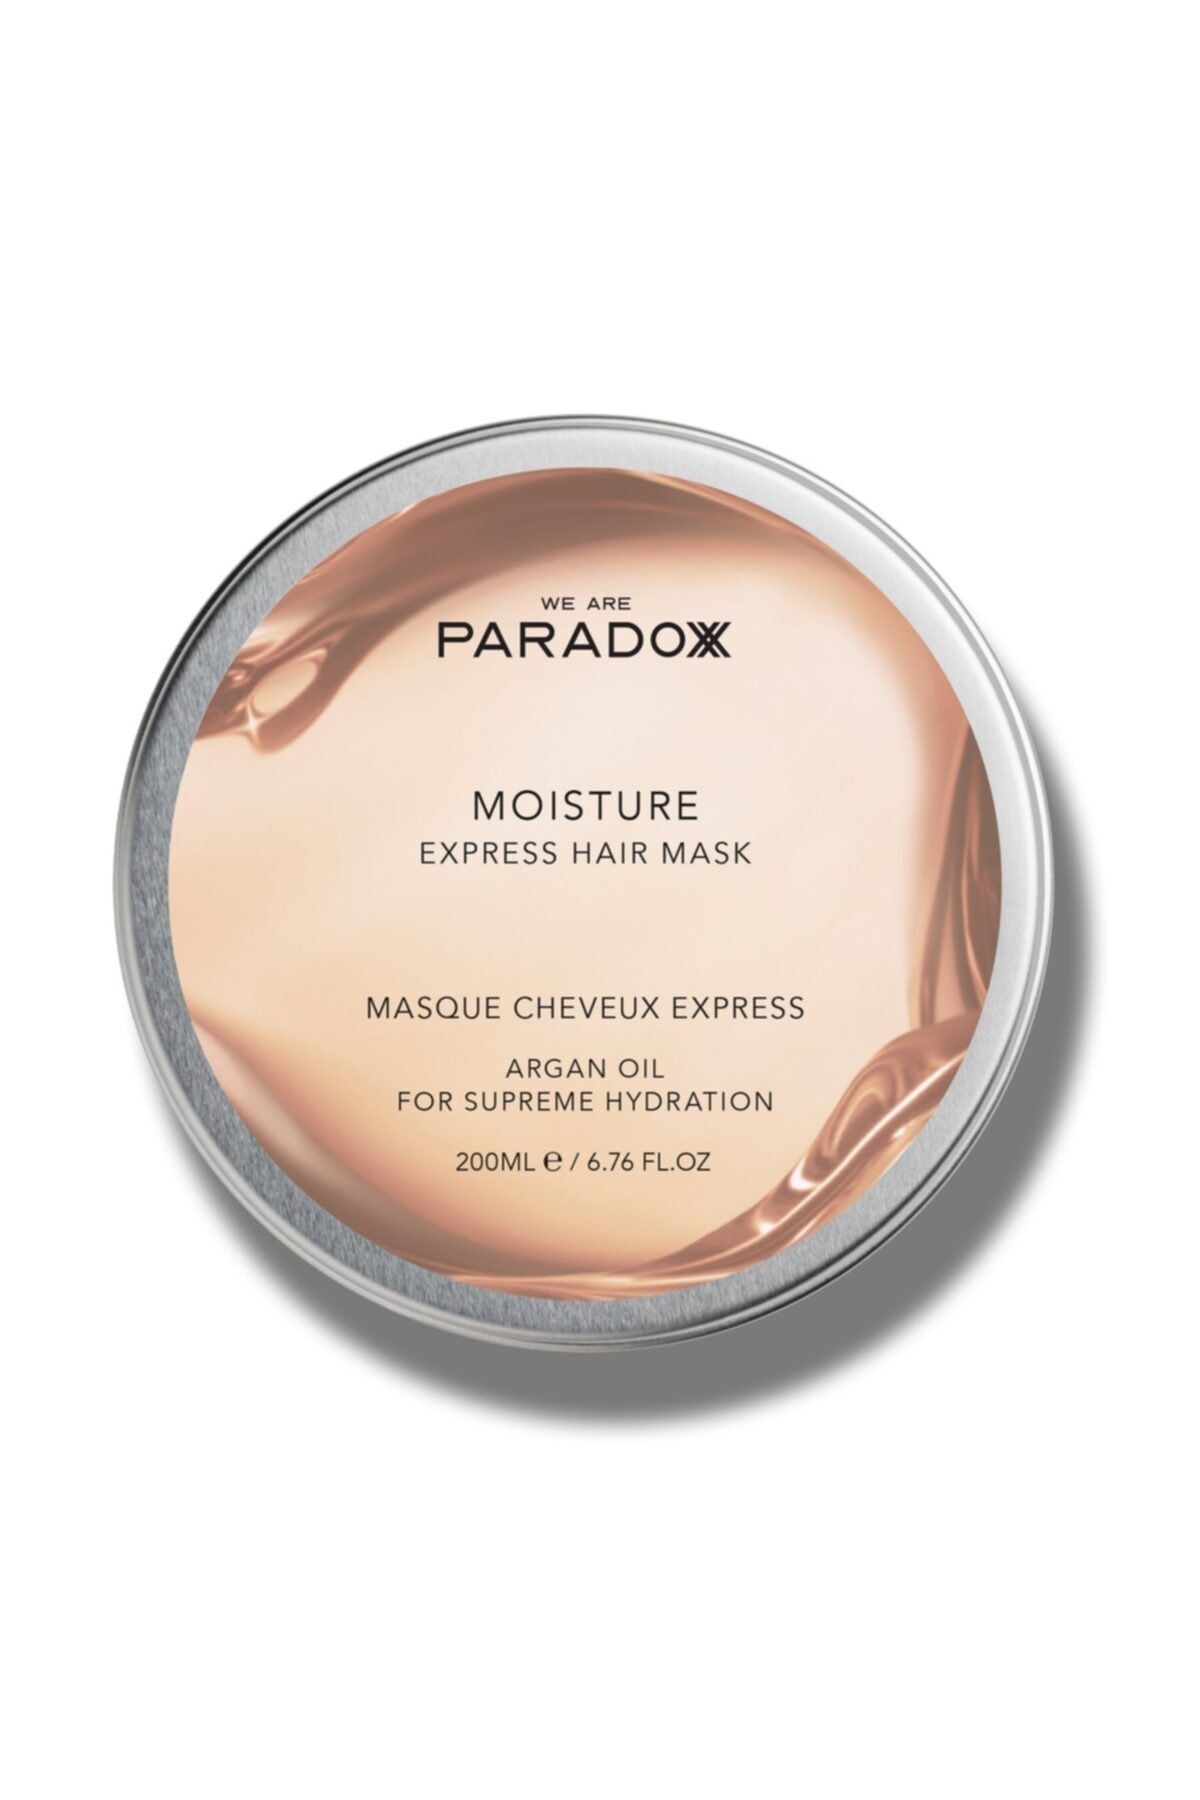 PARADOX Moısture Express Haır Mask 1 Dakikada Saçları Canlandıran Yoğun Nem Maskesi 200 Ml